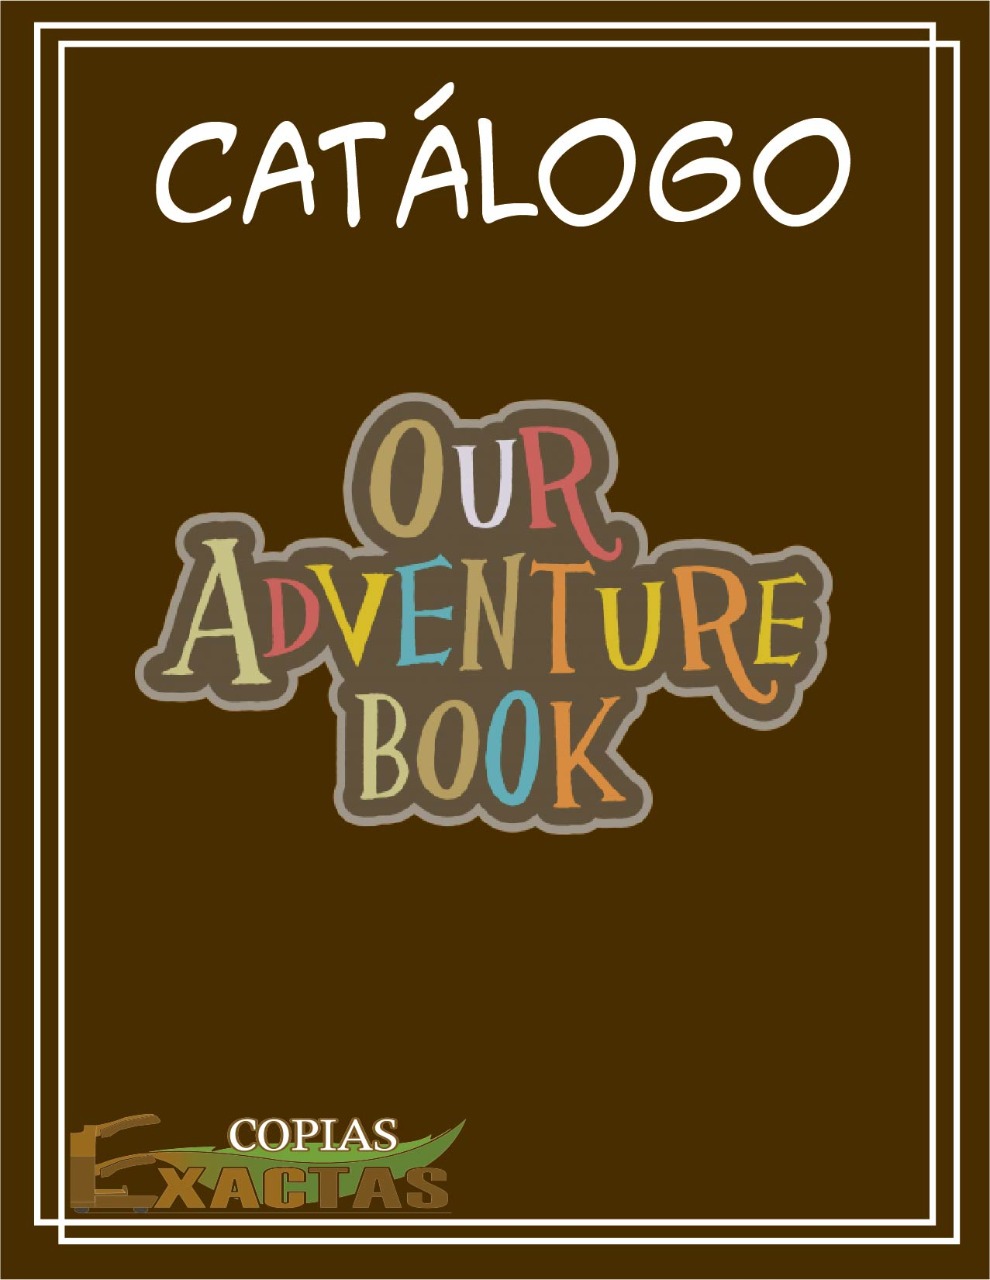 Our Adventure Book – Libro de aventuras – COPIAS EXACTAS – Copias